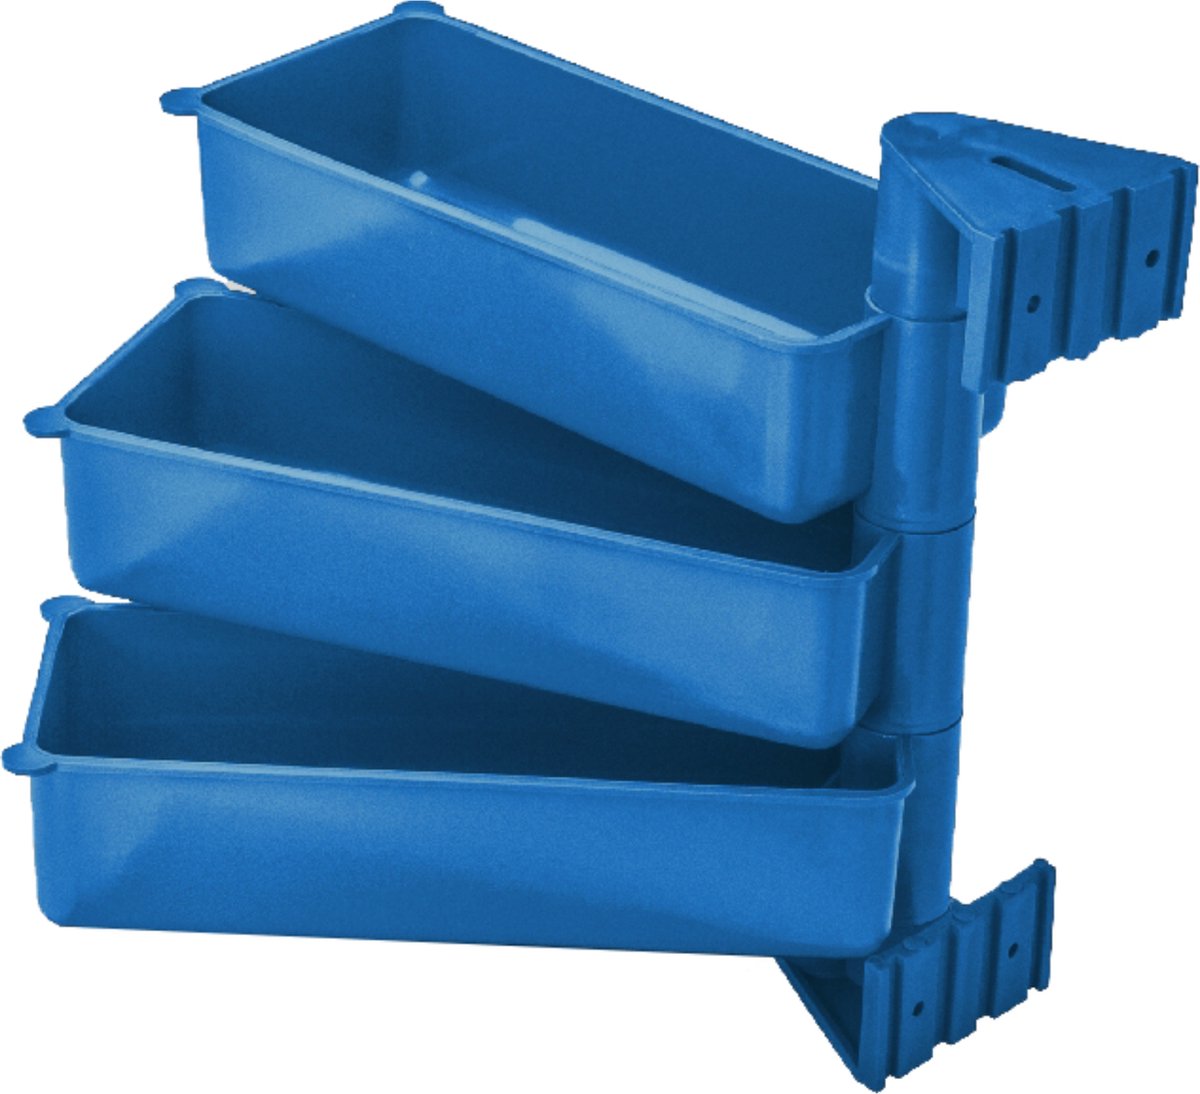 PIVOT - Set van 3 Roterende Opberg Containers | Polypropyleen | Blauw Kleur -Organiseer